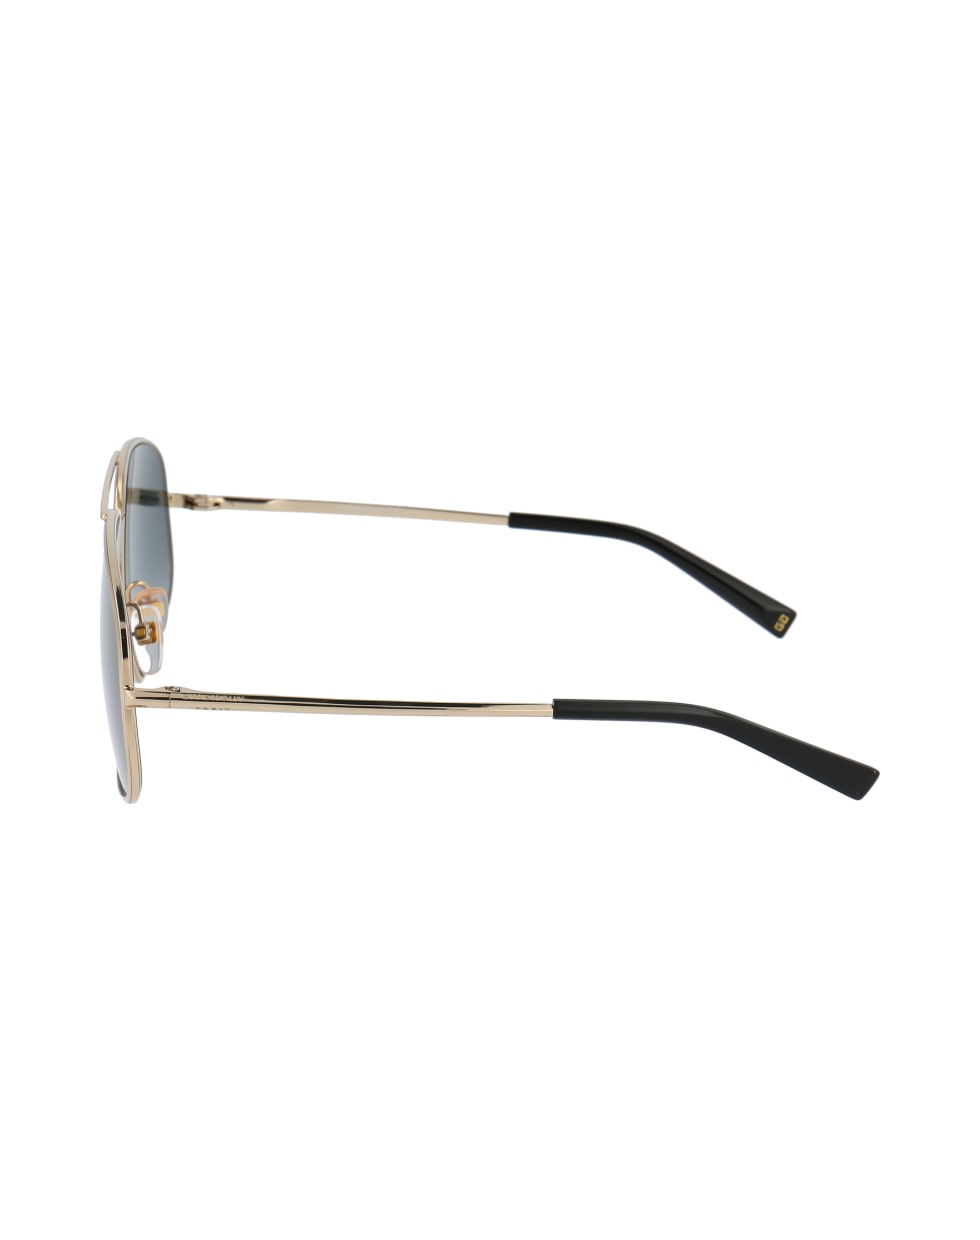 Givenchy Eyewear Gv 7193/s Sunglasses - J5G9O GOLD